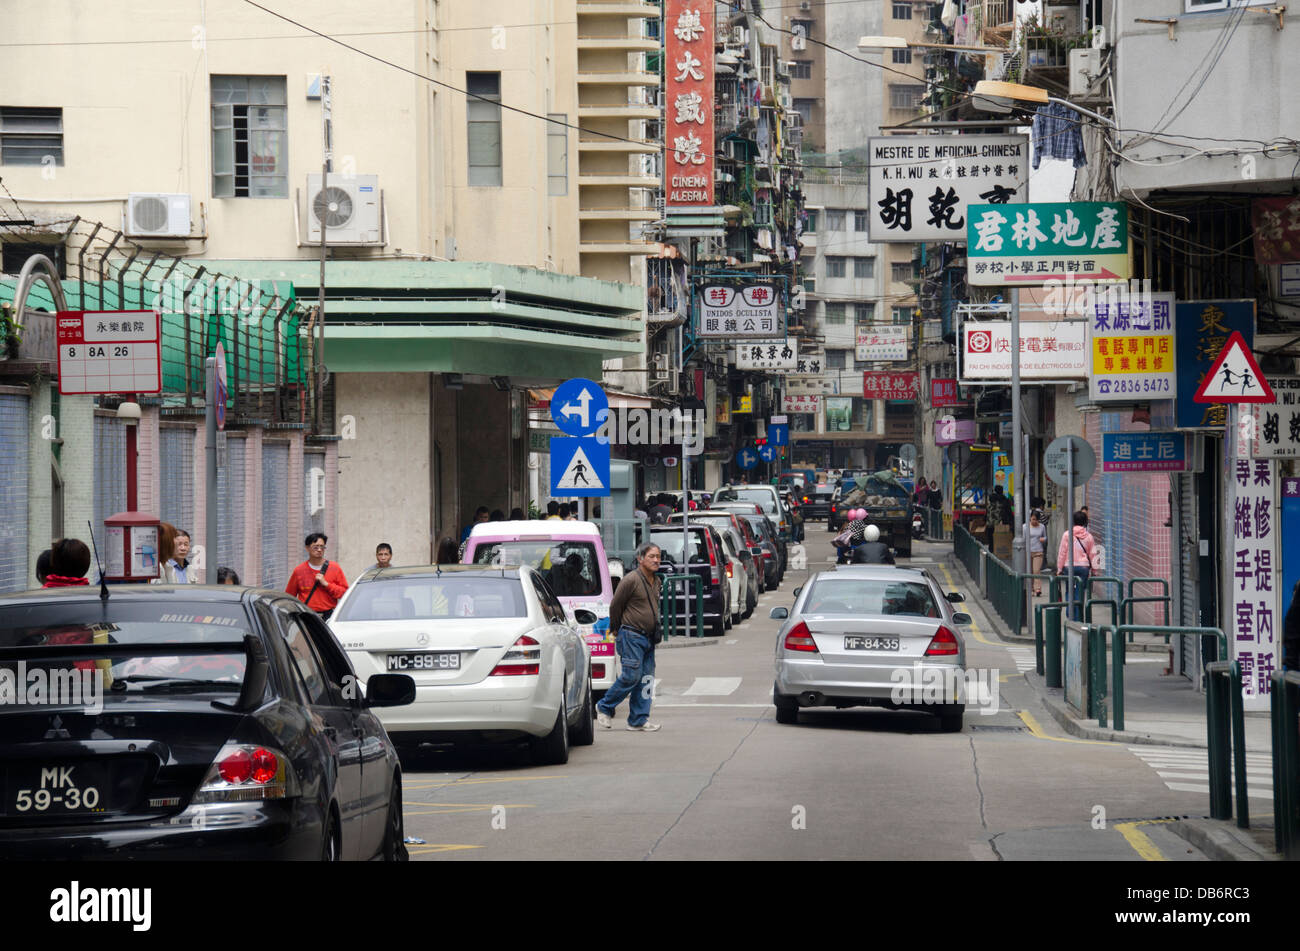 China, Macau, Guangdong Sheng Province, city of Zhuhai Shi. Typical Macau street scene. Stock Photo